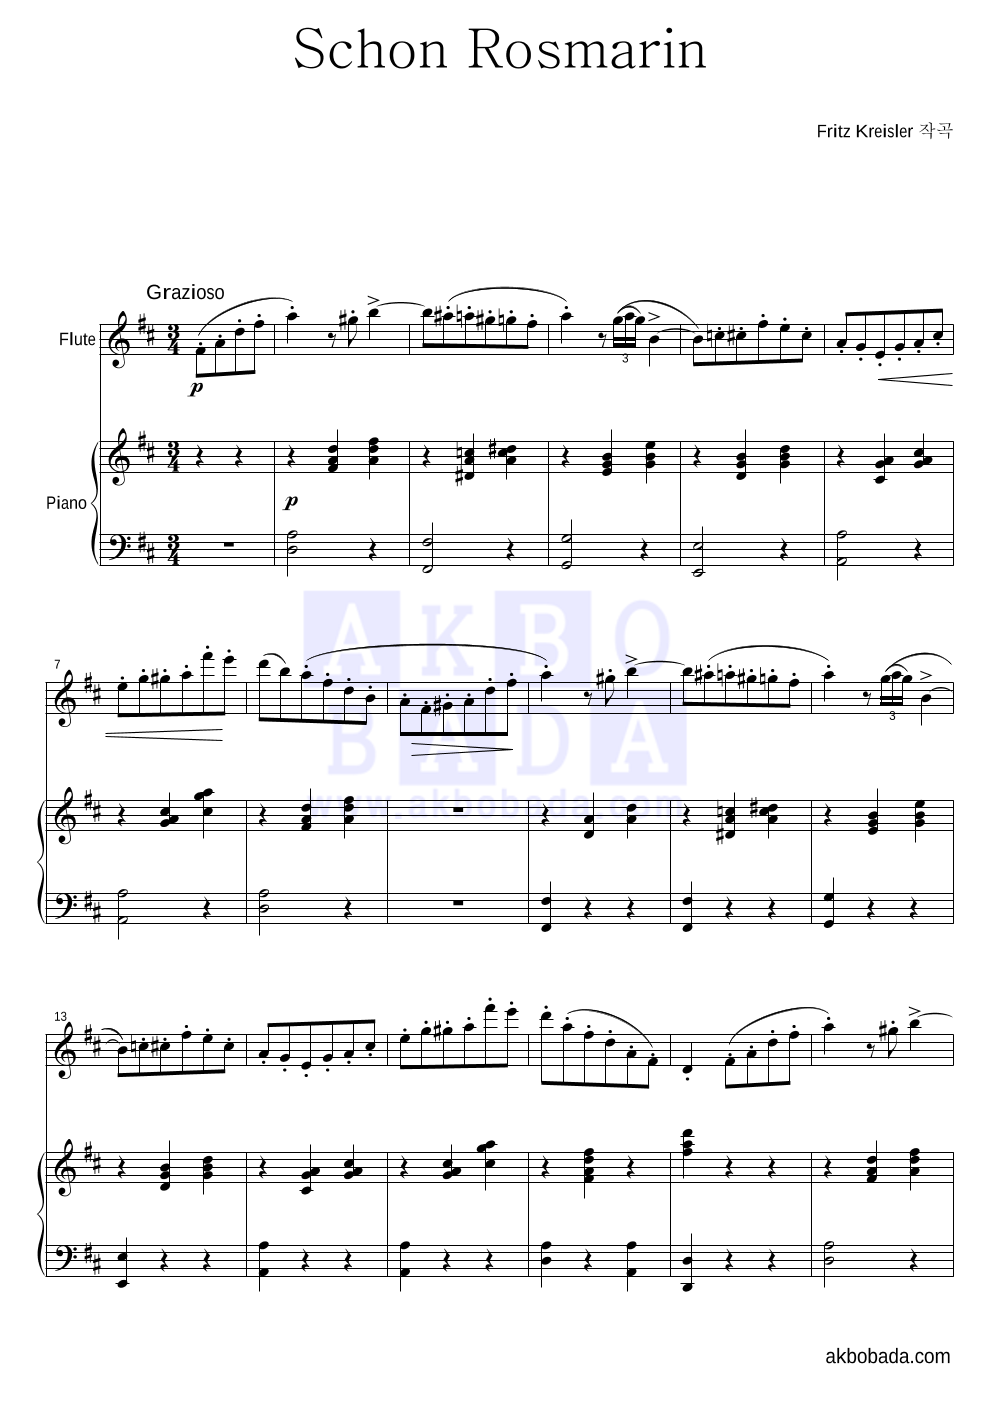 크라이슬러 - Schon Rosmarin (아름다운 로즈마린) 플룻&피아노 악보 